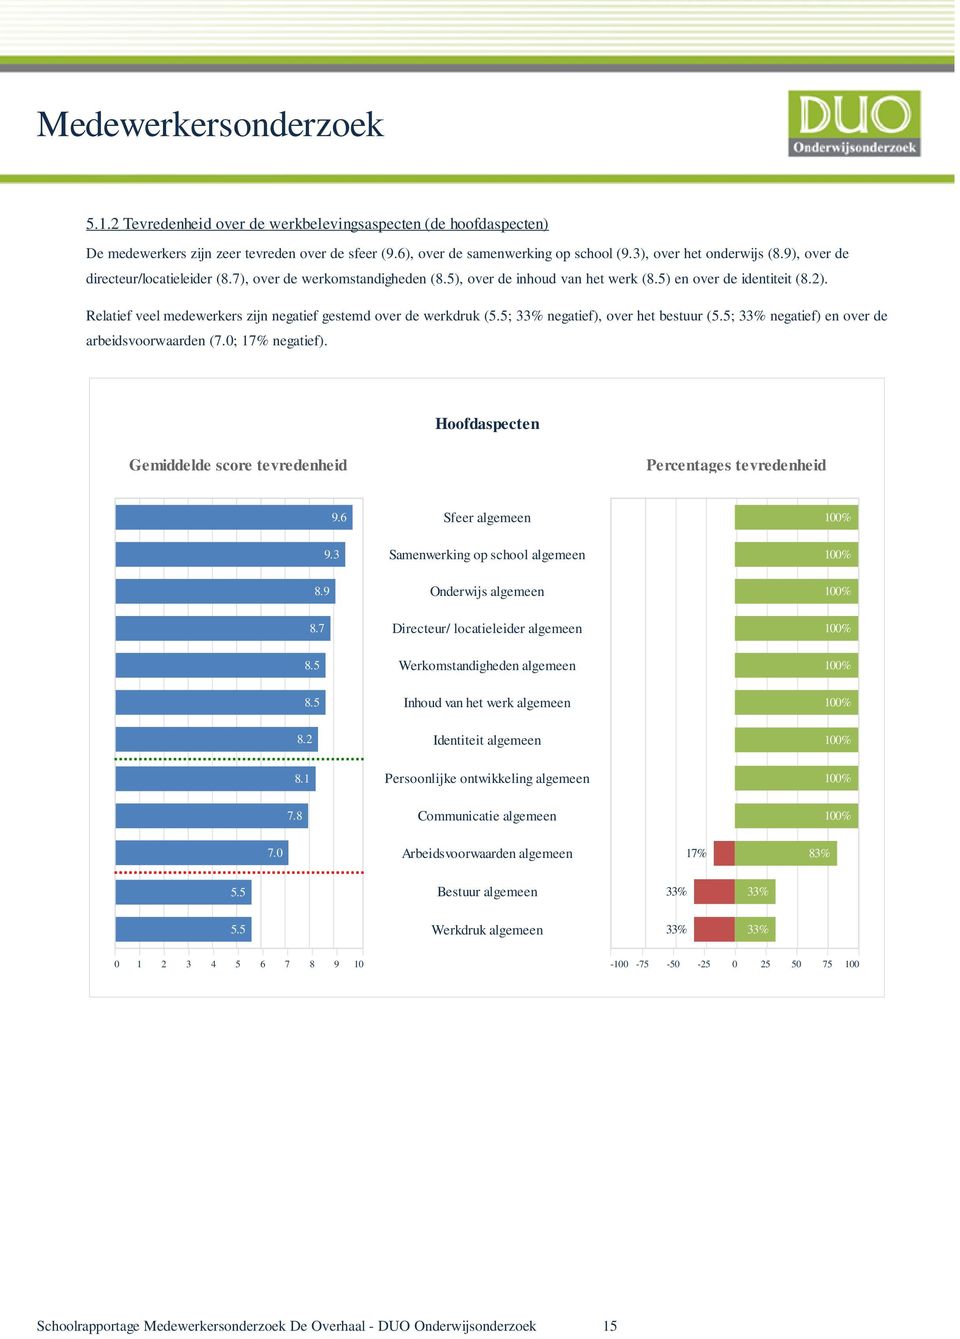 Relatief veel medewerkers zijn negatief gestemd over de werkdruk (5.5; 33% negatief), over het bestuur (5.5; 33% negatief) en over de arbeidsvoorwaarden (7.0; 17% negatief).